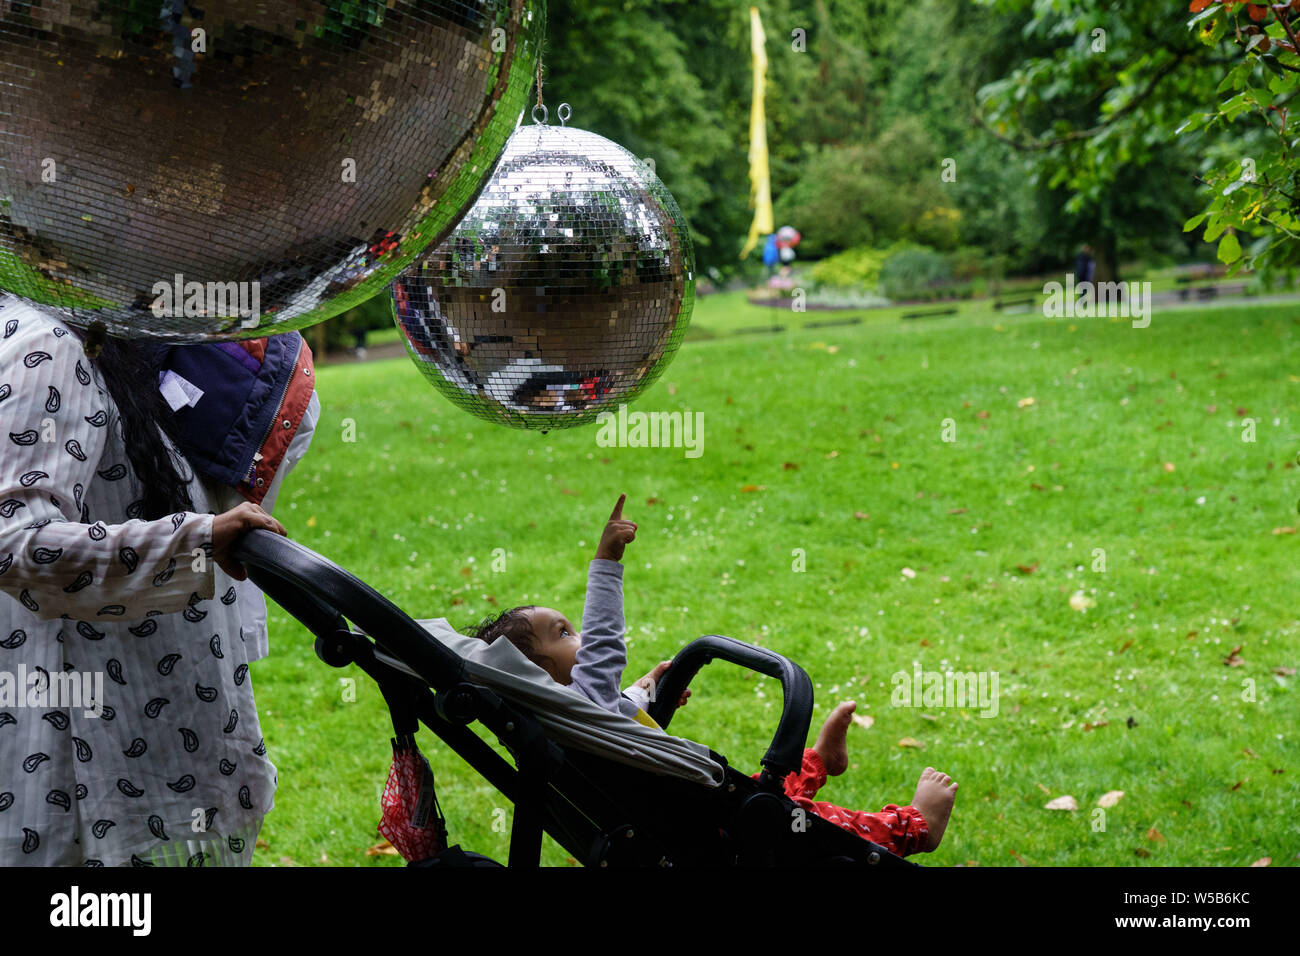 Un jeune bébé dans un Buggy pointant vers une grande boule de paillettes  suspendue au-dessus, Valley Gardens. Harrogate, Yorkshire du Nord,  Angleterre, Royaume-Uni Photo Stock - Alamy